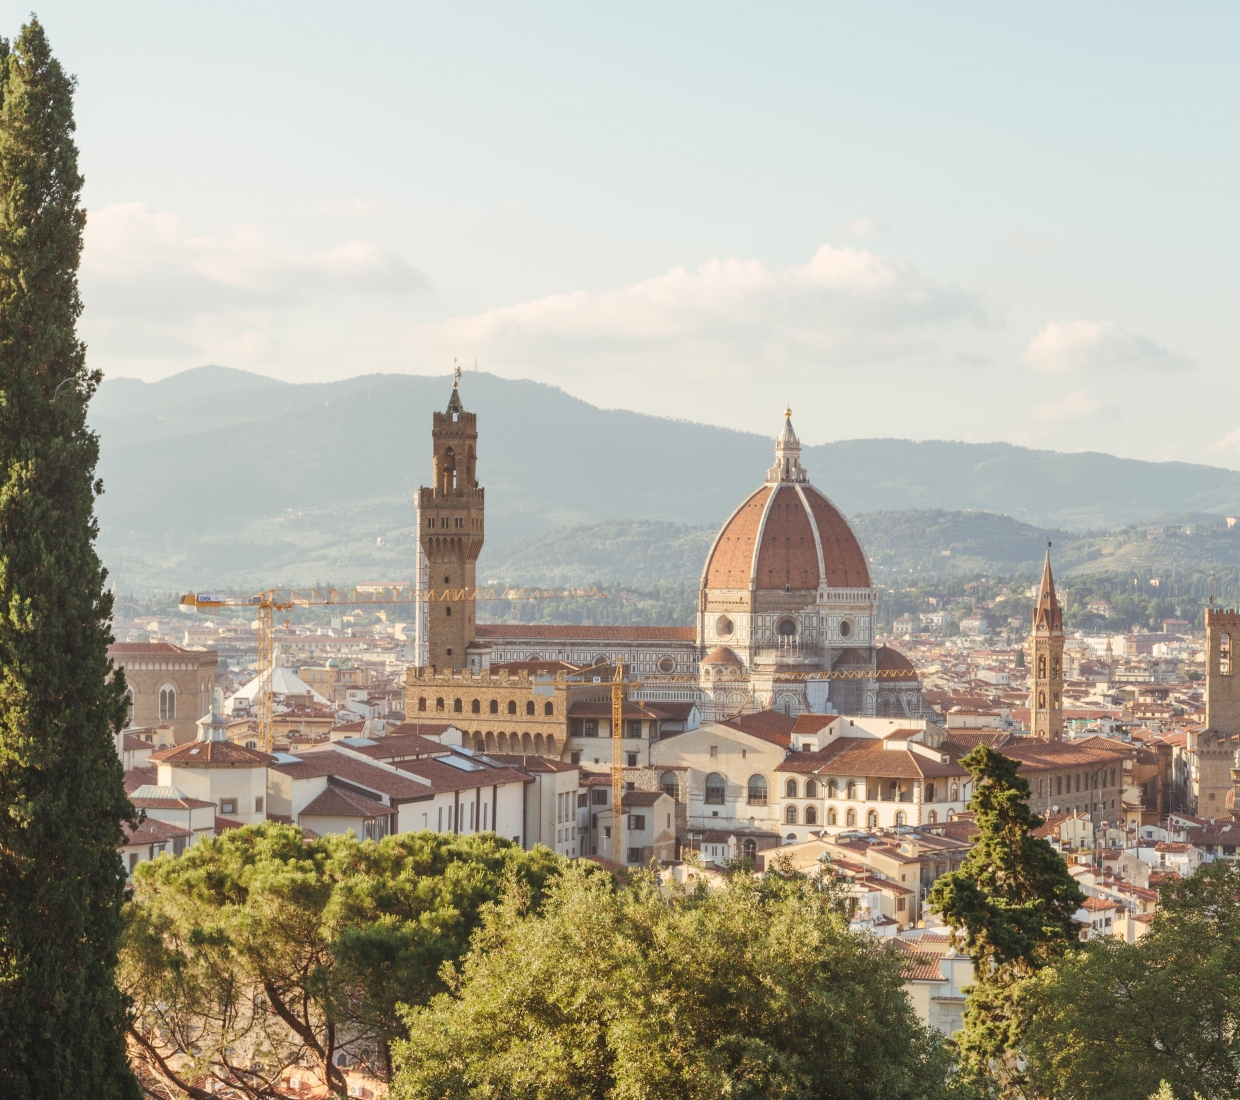 Seleção dos melhores e mais bonitos hotéis e casas de férias em Florença